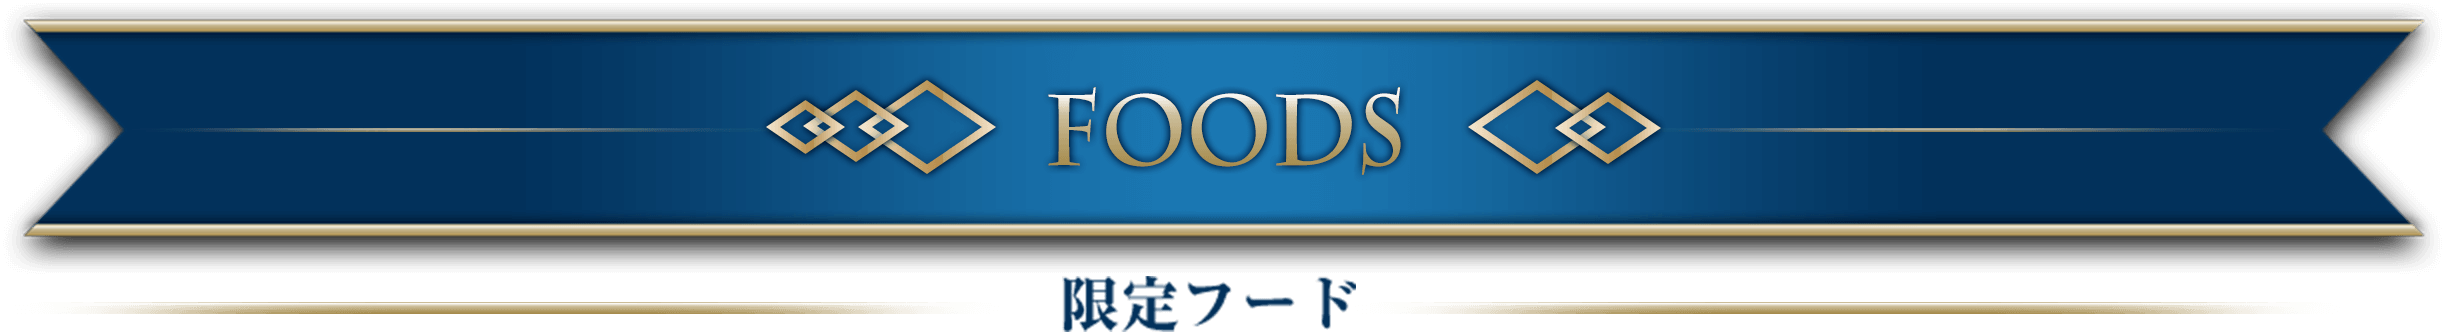 FOODS 限定フード